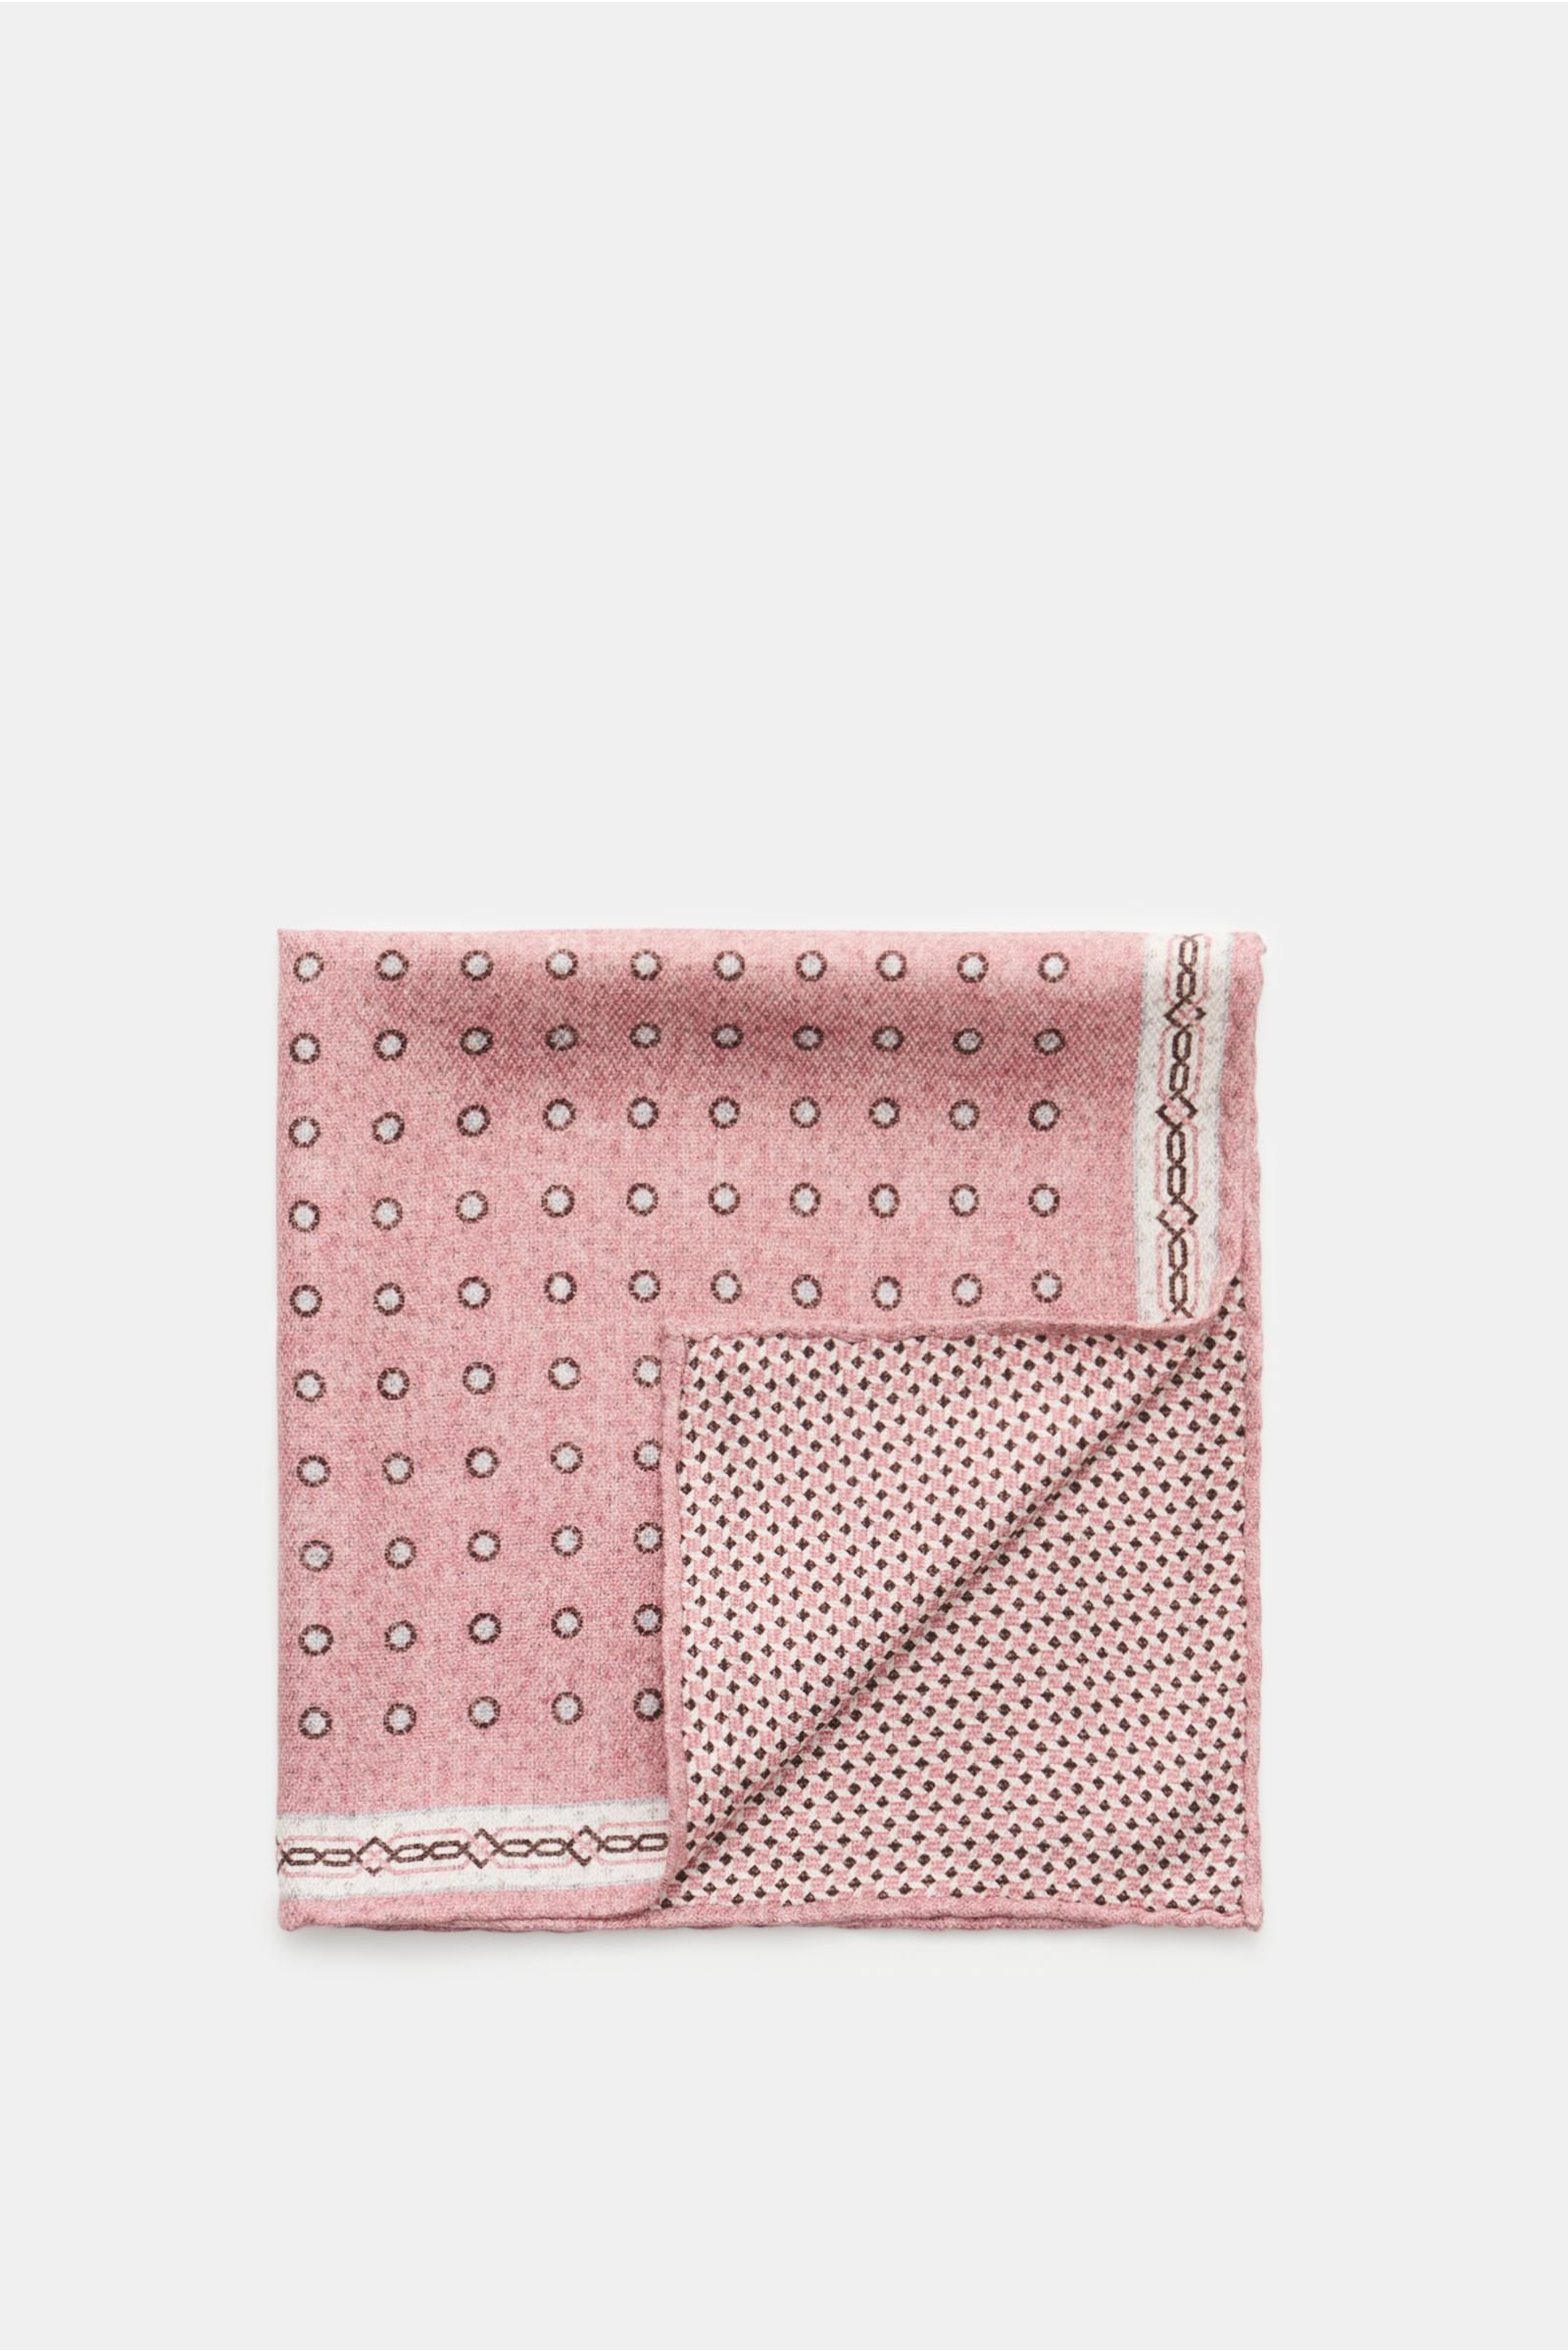 Silk pocket square antique pink/dark brown/light grey patterned